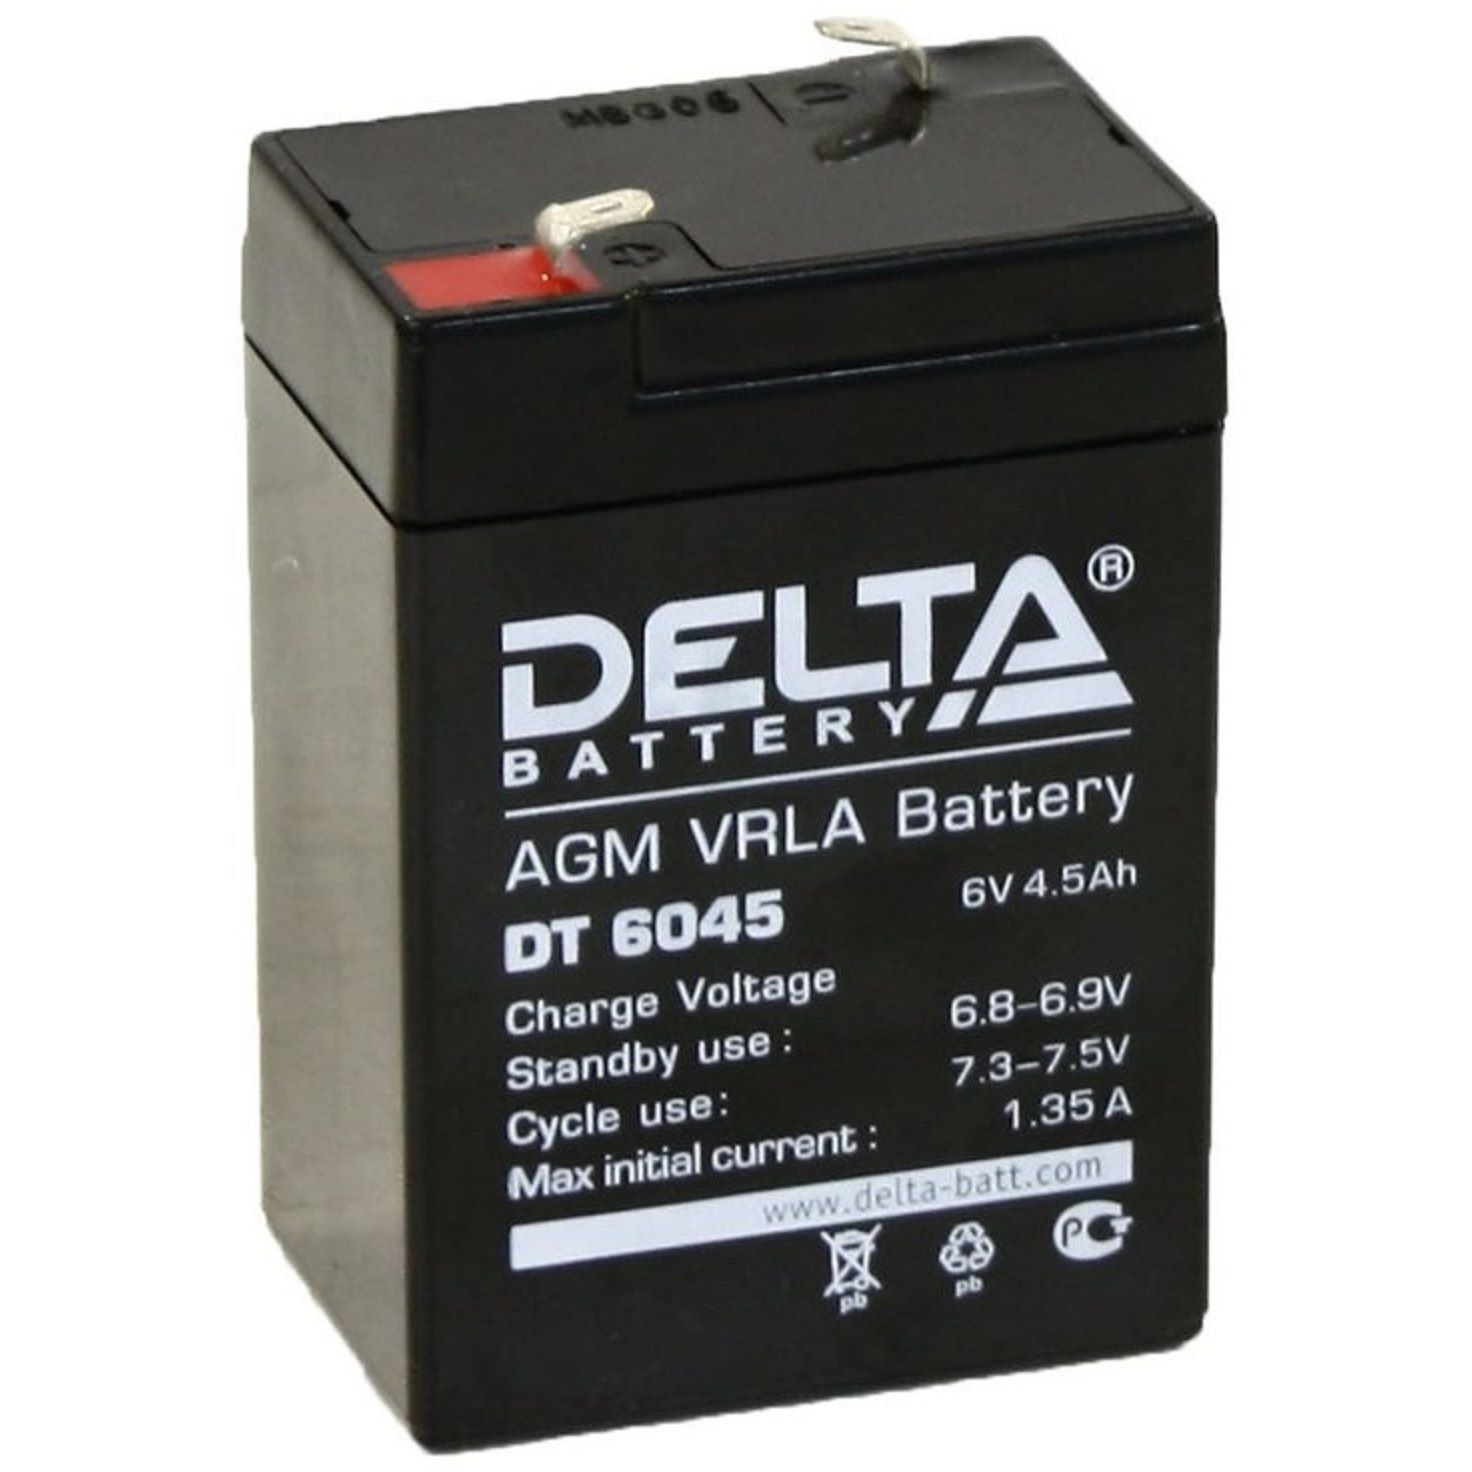 1 5 в 6 вольт. Аккумулятор Delta 6v 4.5Ah. Delta DT 6045 (6v / 4.5Ah). DT 4045 Delta аккумуляторная батарея. Аккумуляторная батарея Delta DT 6045.